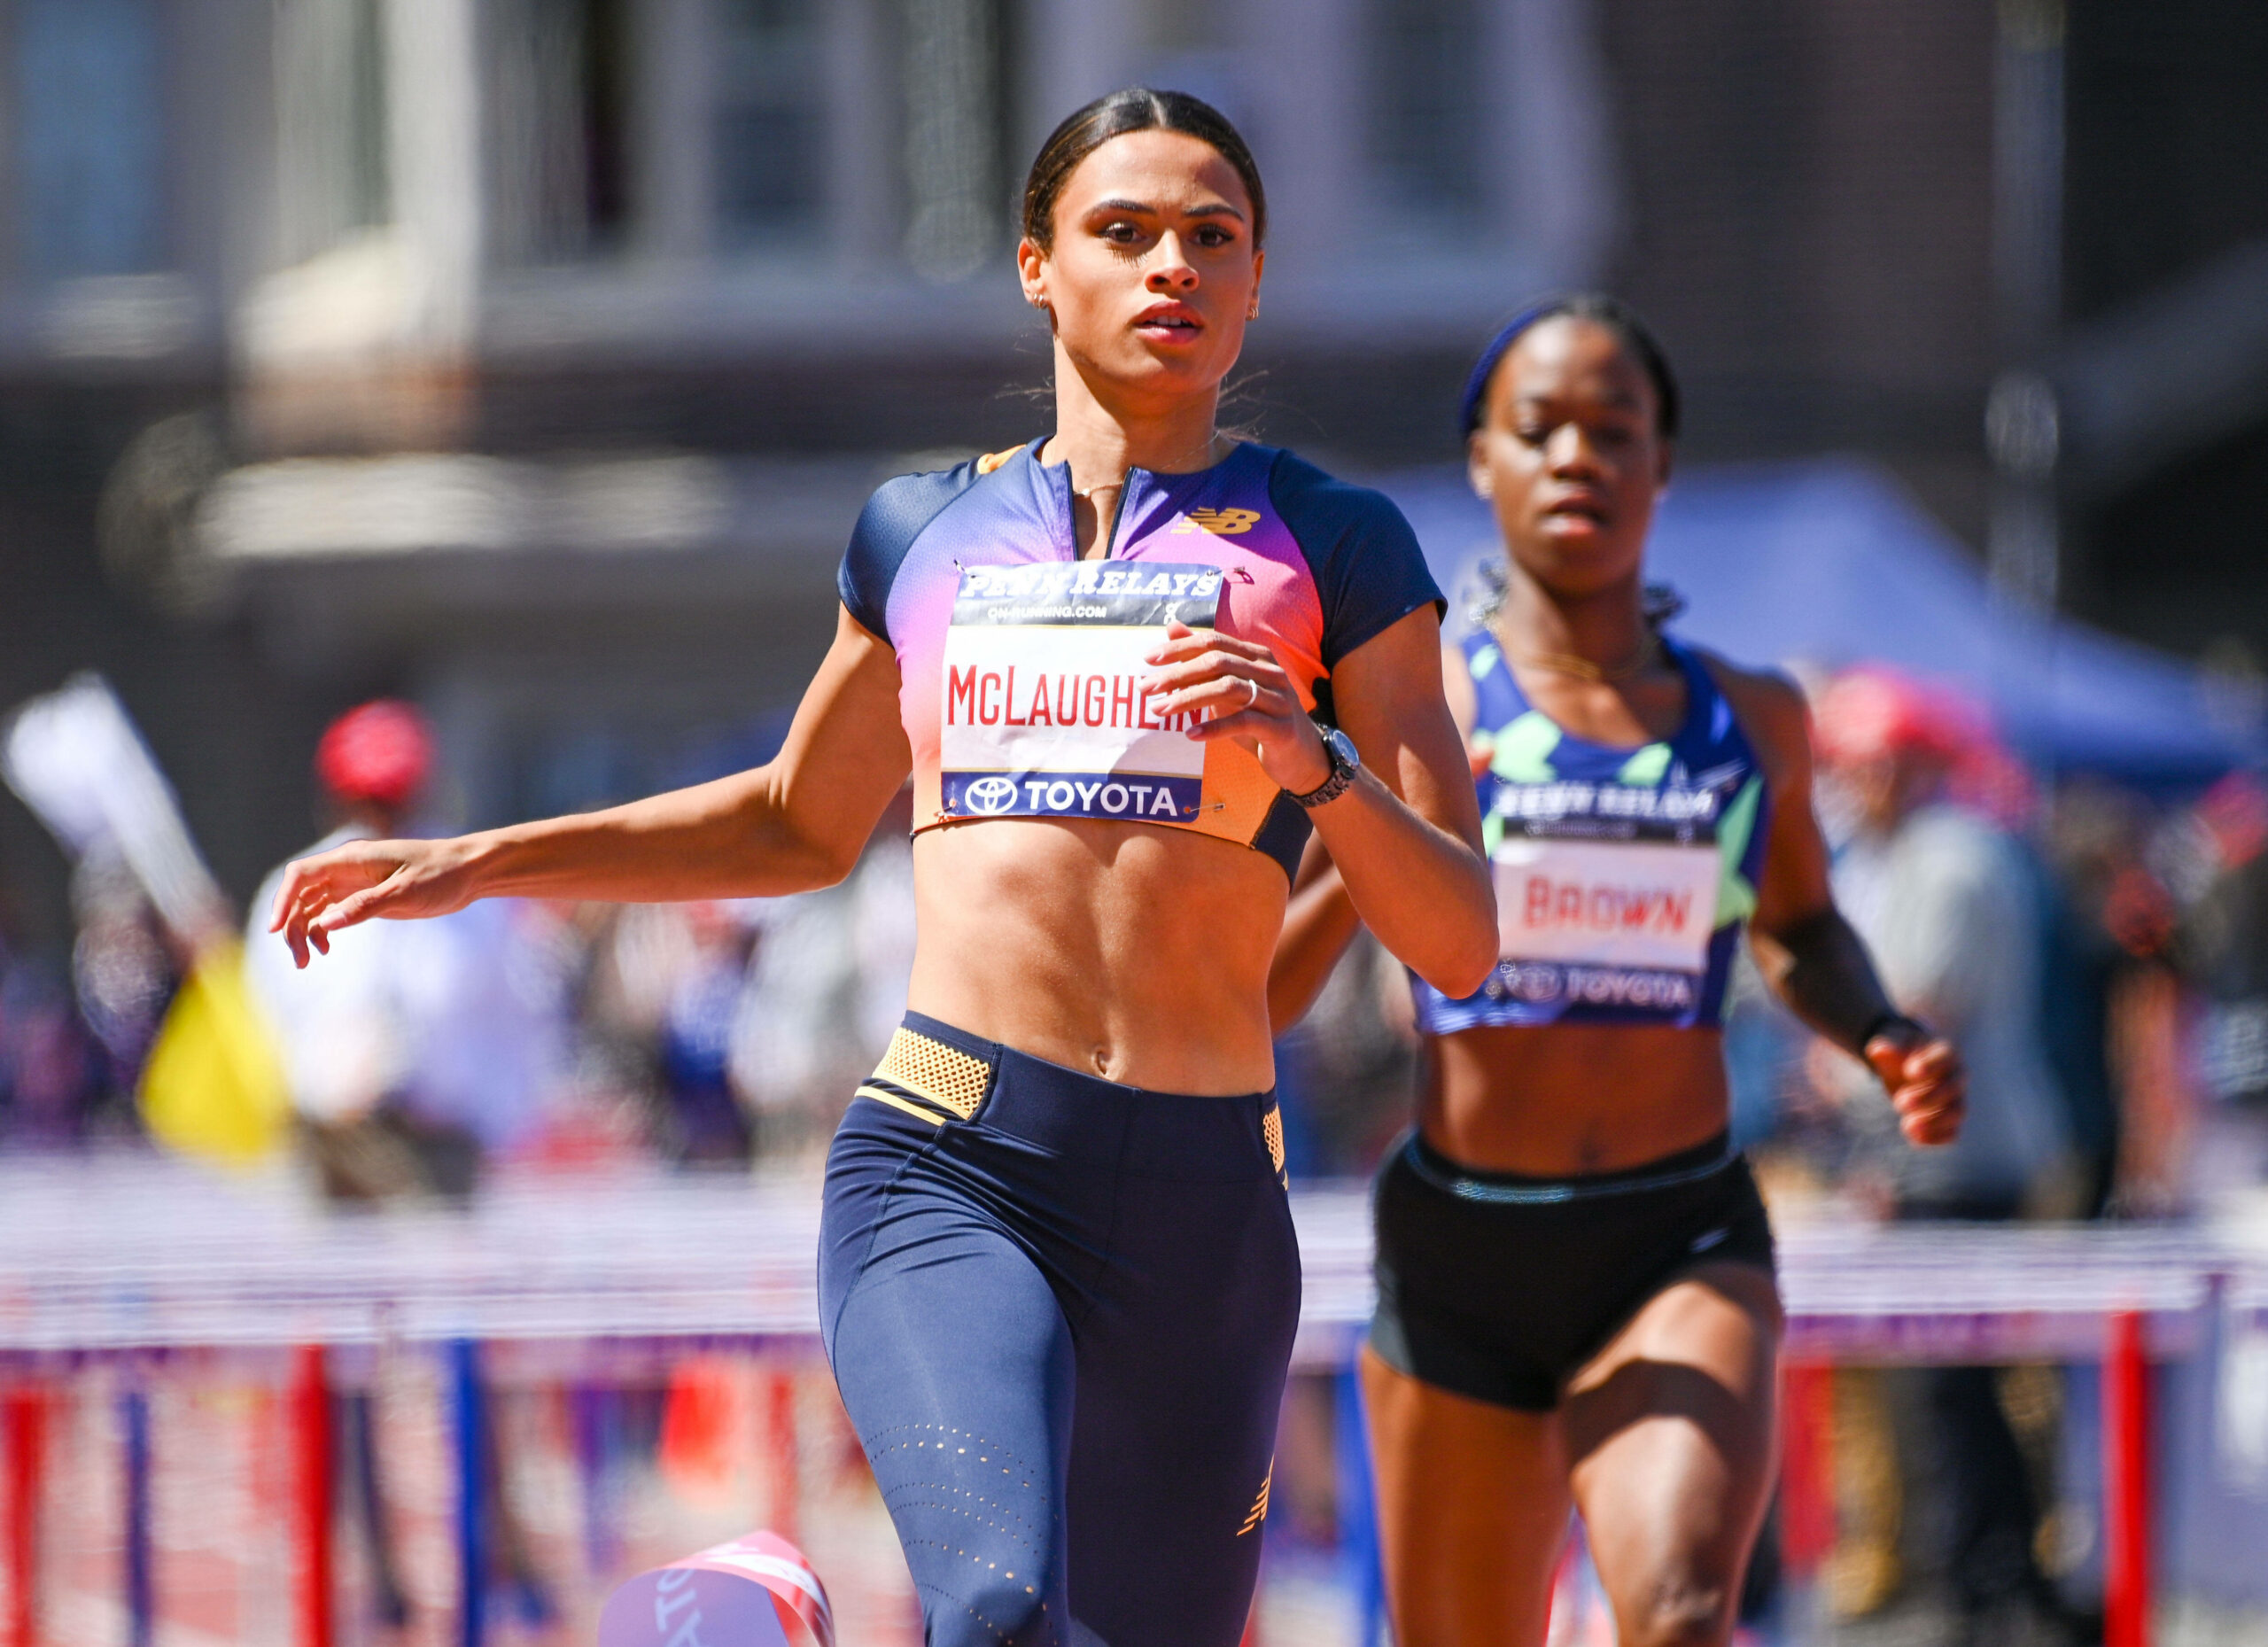 Olympiasiegerin läuft Leichtathletik-Weltrekord